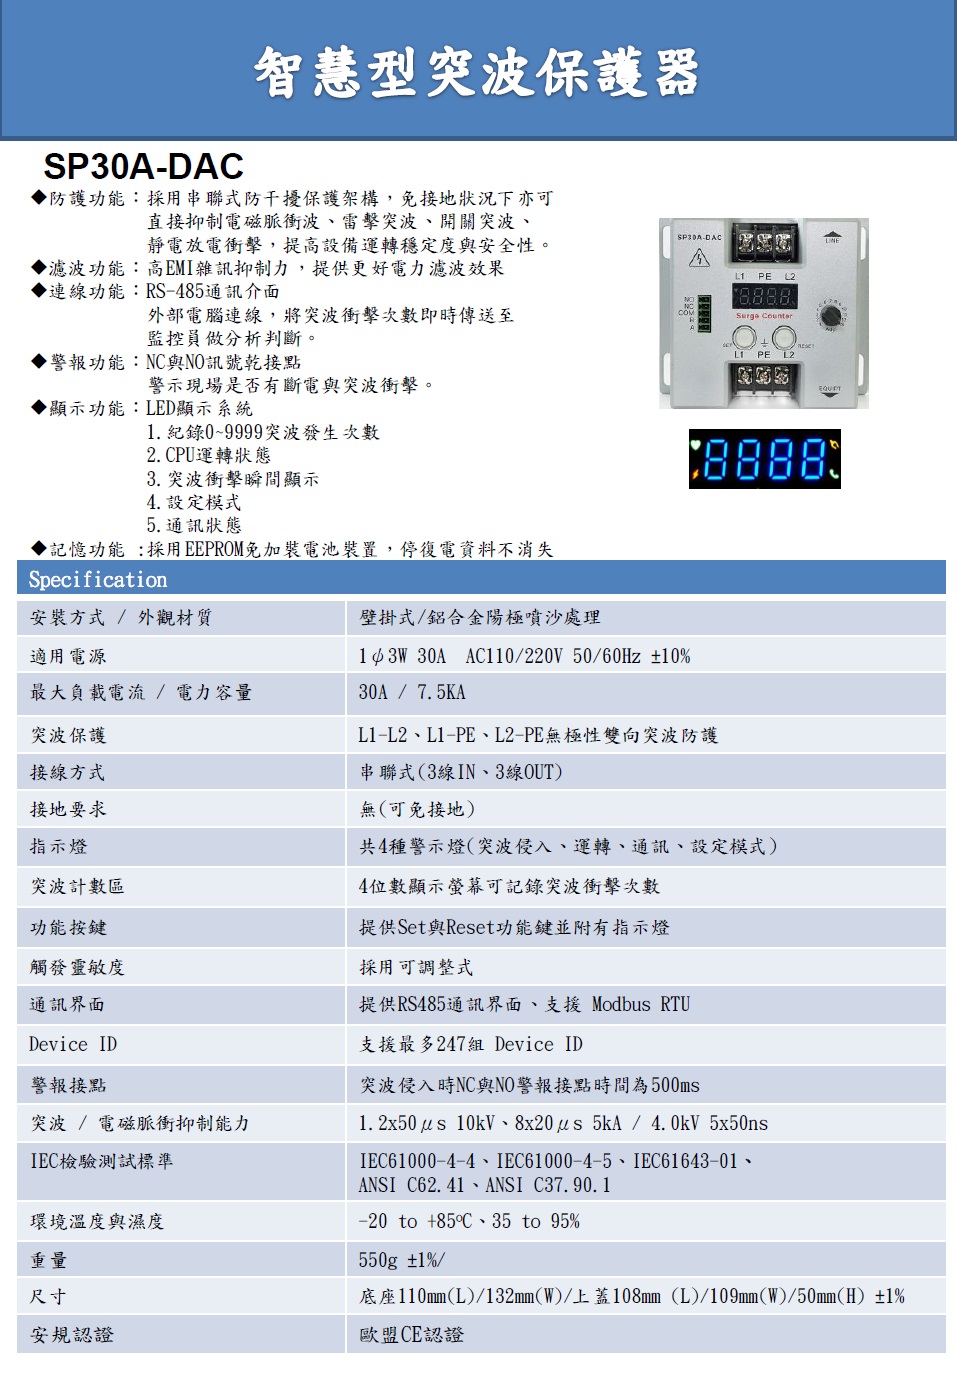 YDSP30A-DAC  智慧型突波保護器產品圖